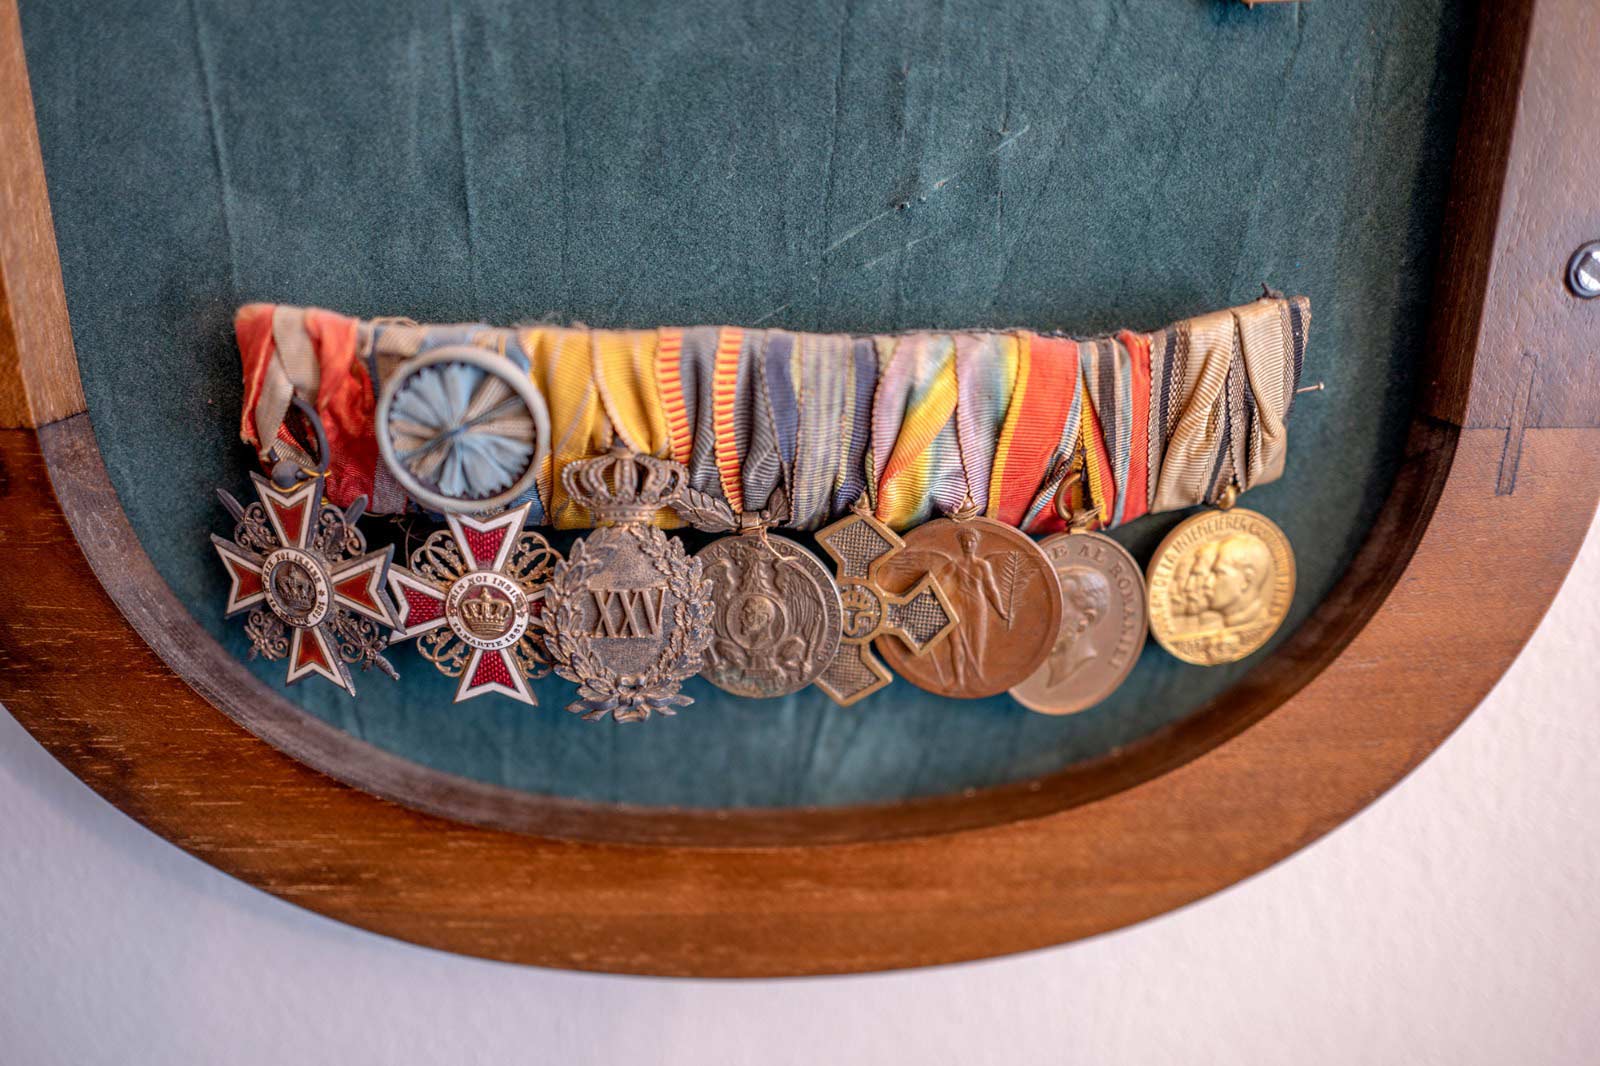 Distincții care au fost oferite ofițerului Constantin Carp, participant la al Doilea Război Balcanic și Primul Război Mondial (credit foto Octavian Bâlea).